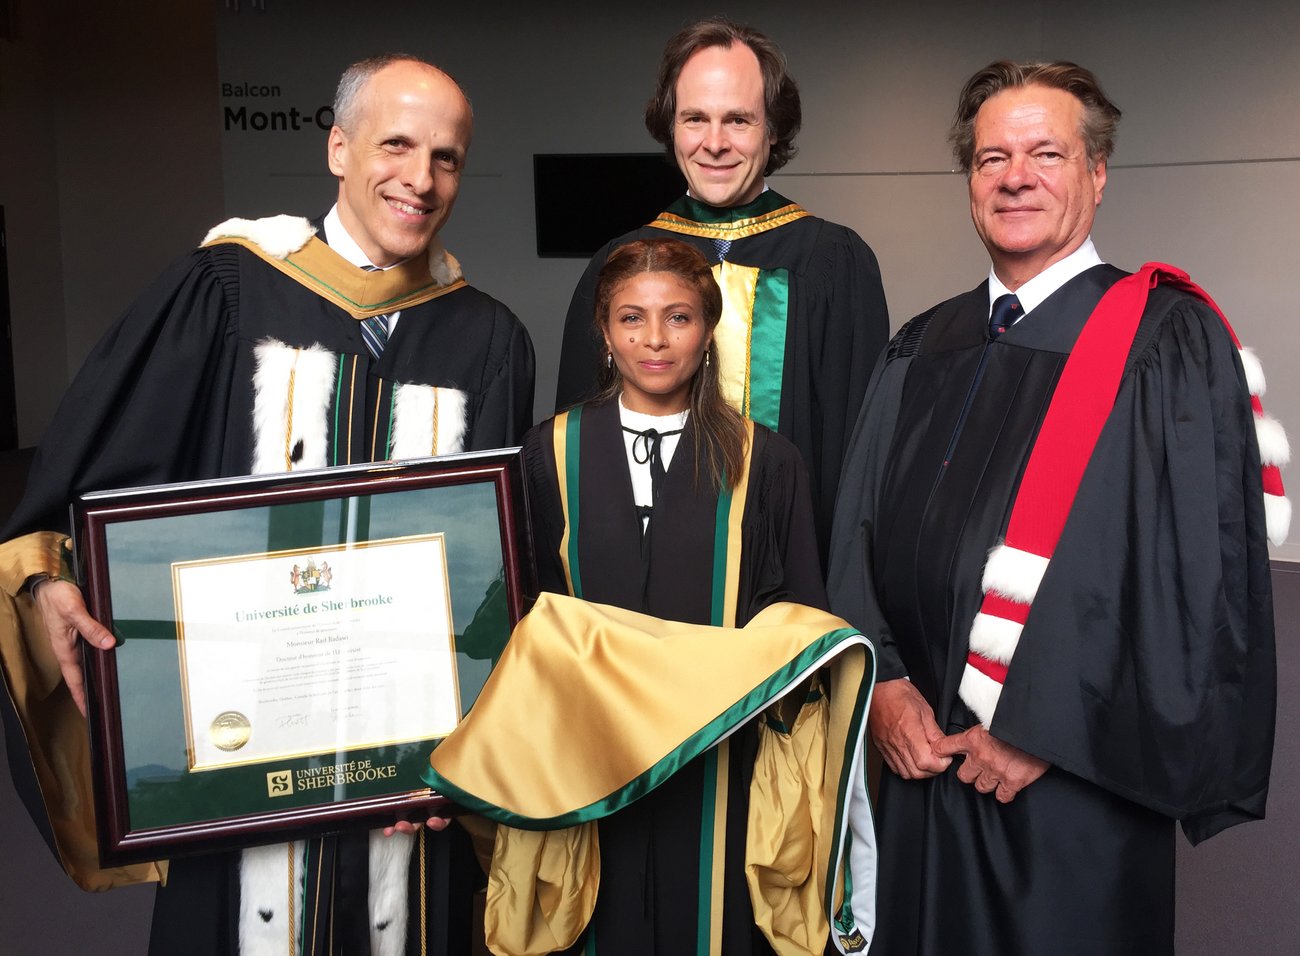 L'épouse de Raif Badawi, Ensaf Haidar, en compagnie du recteur de l'Université de Sherbrooke, Pierre Cossette, du doyen de la Faculté de droit, Sébastien Lebel-Grenier, et du professeur Hervé Cassan.